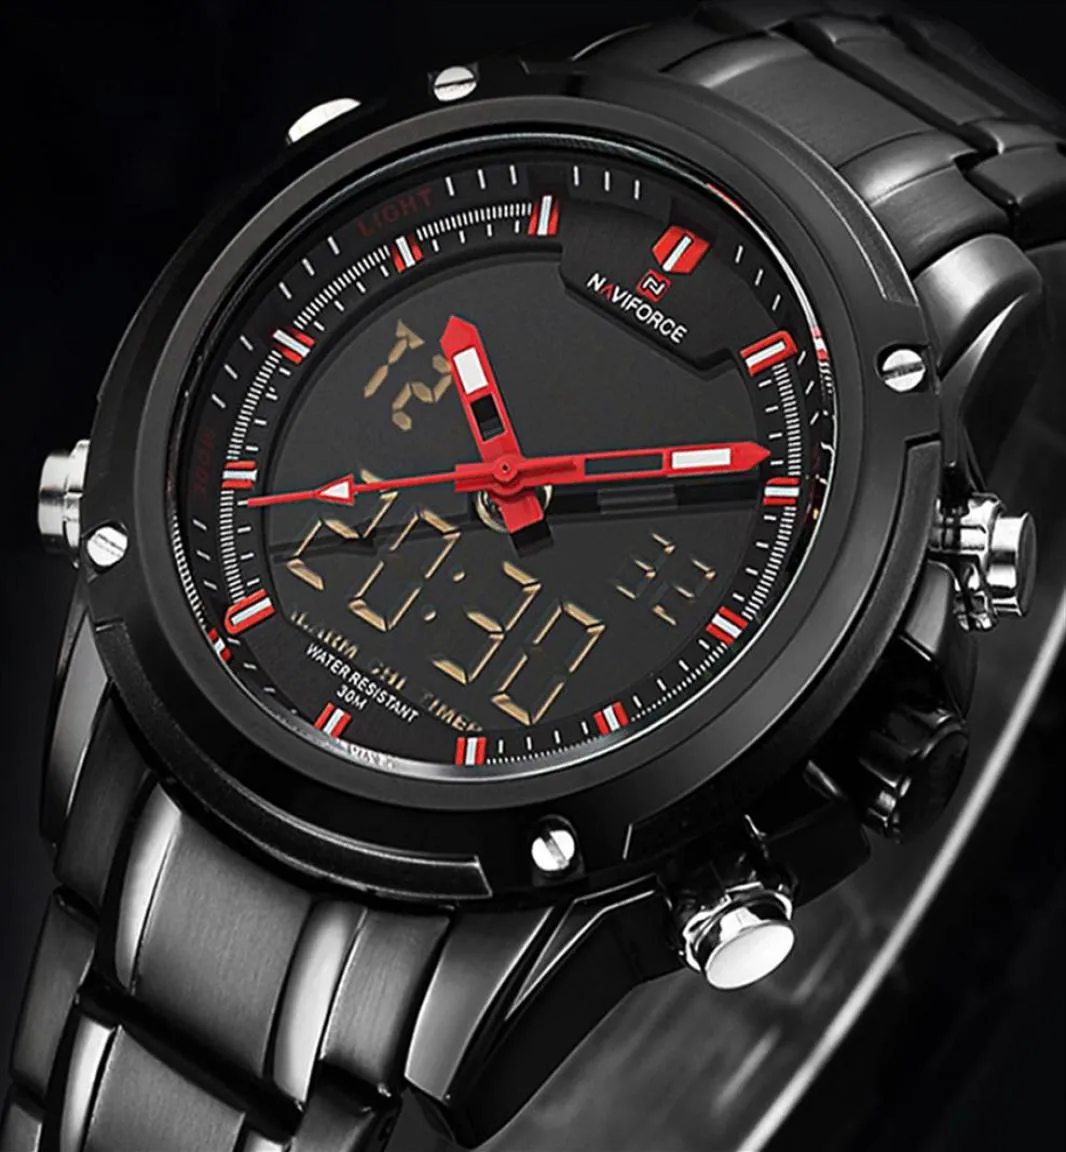 Top Luxury Brand Naviforce Мужчина водонепроницаемые светодиодные спортивные часы мужские часы мужские кварцевые запястья Relogio Masculino 2019 L179U2419053